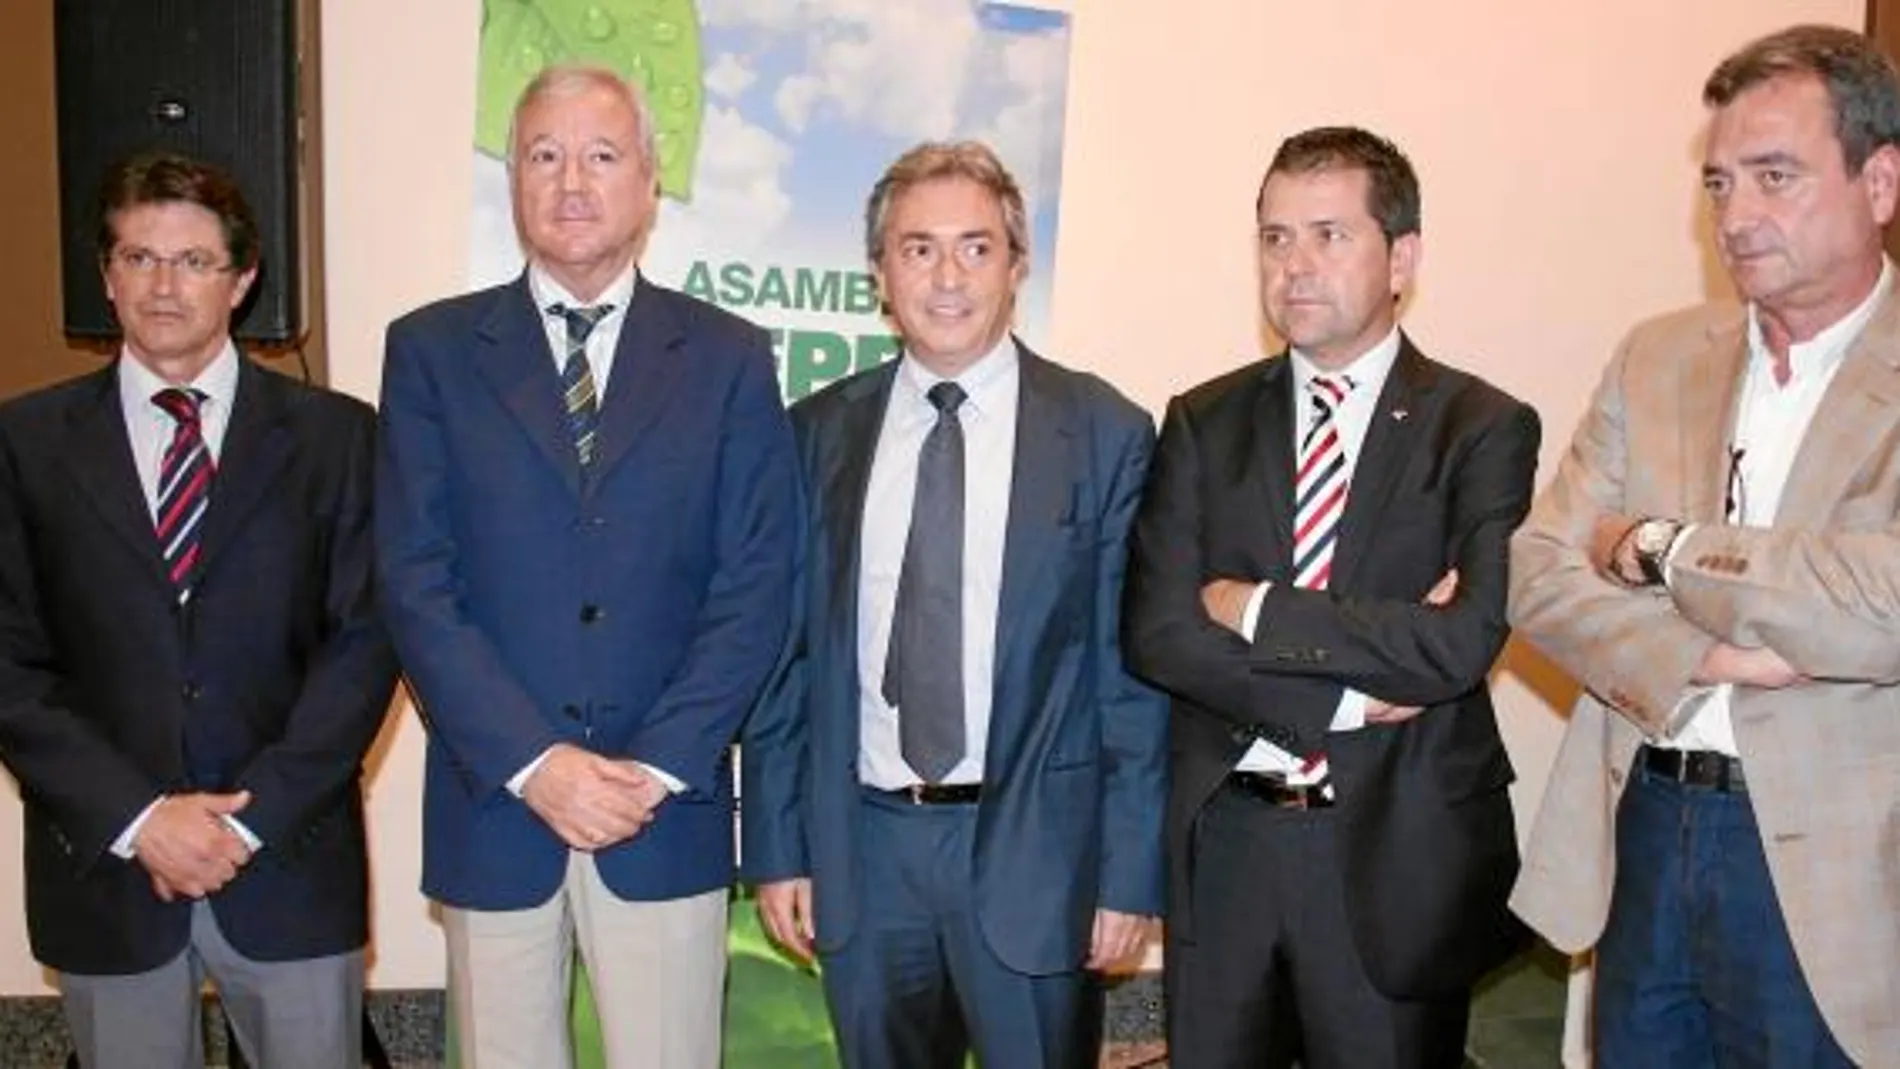 Francisco Jódar, Ramón Luis Valcárcel, Jorge Brotons, Juan Marín y Joaquín Gómez, durante la clausura de la asamblea general de Fepex celebrada ayer en Lorca